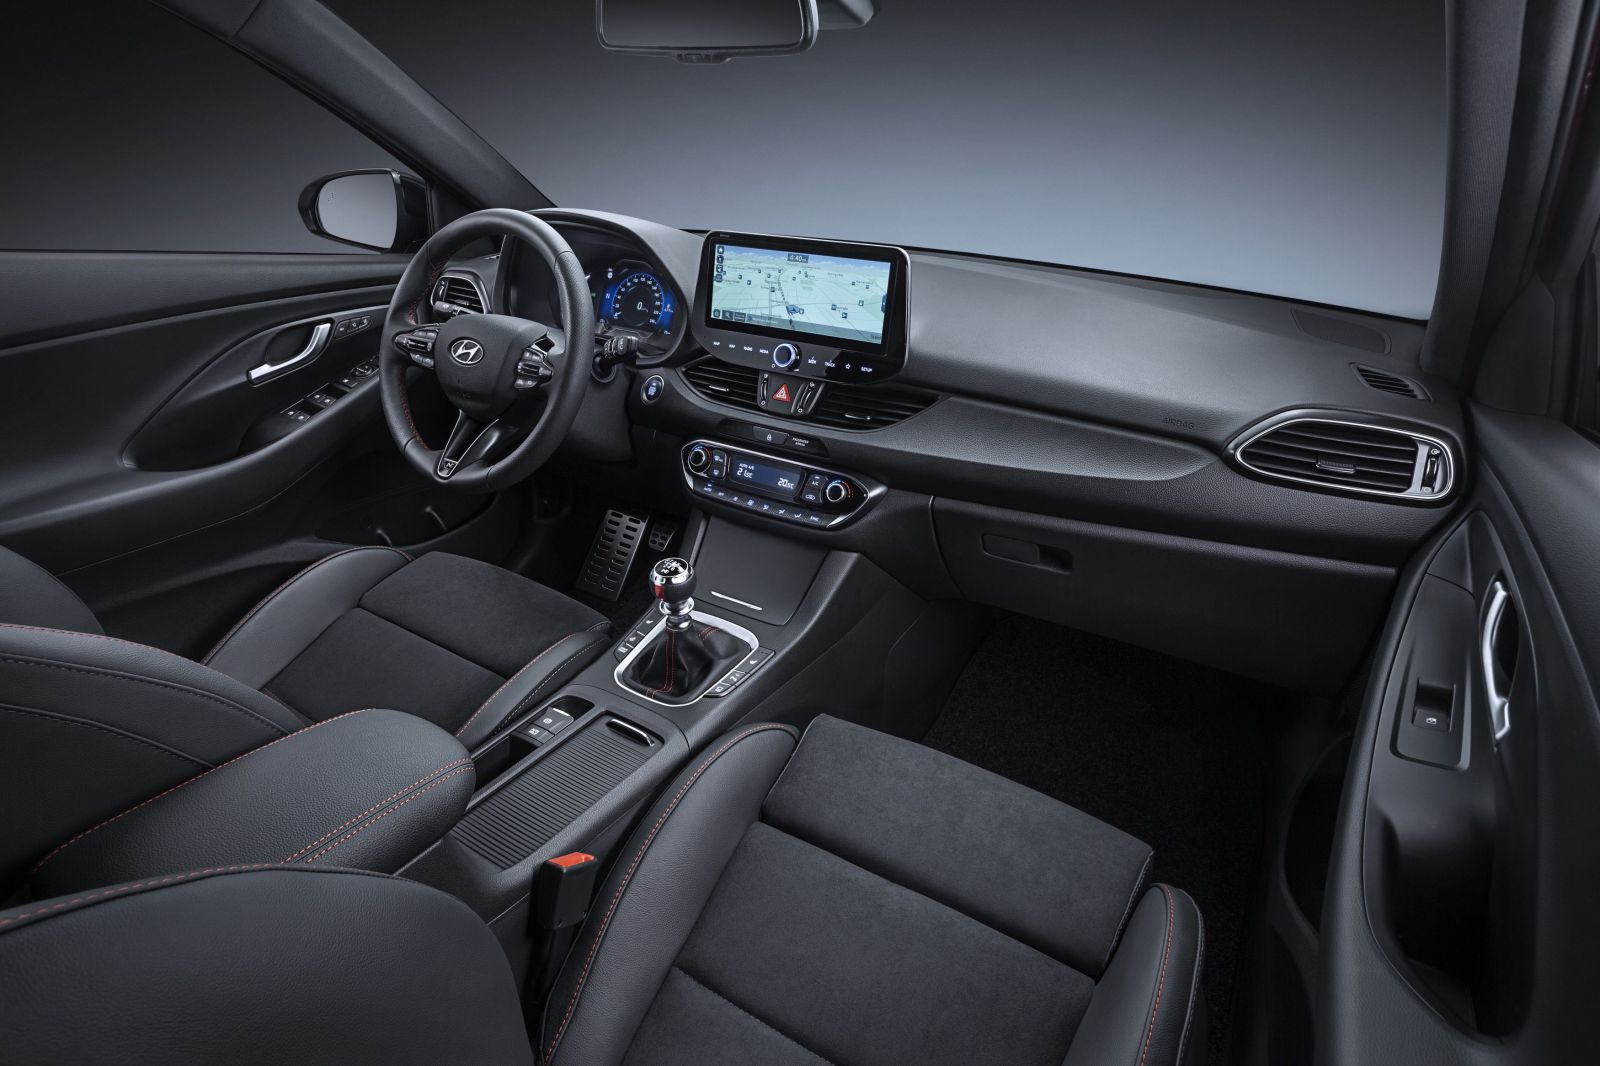 Populárny Hyundai i30 získal po veľkom facelifte atraktívnejší zjav, modernejšiu techniku a nové motory